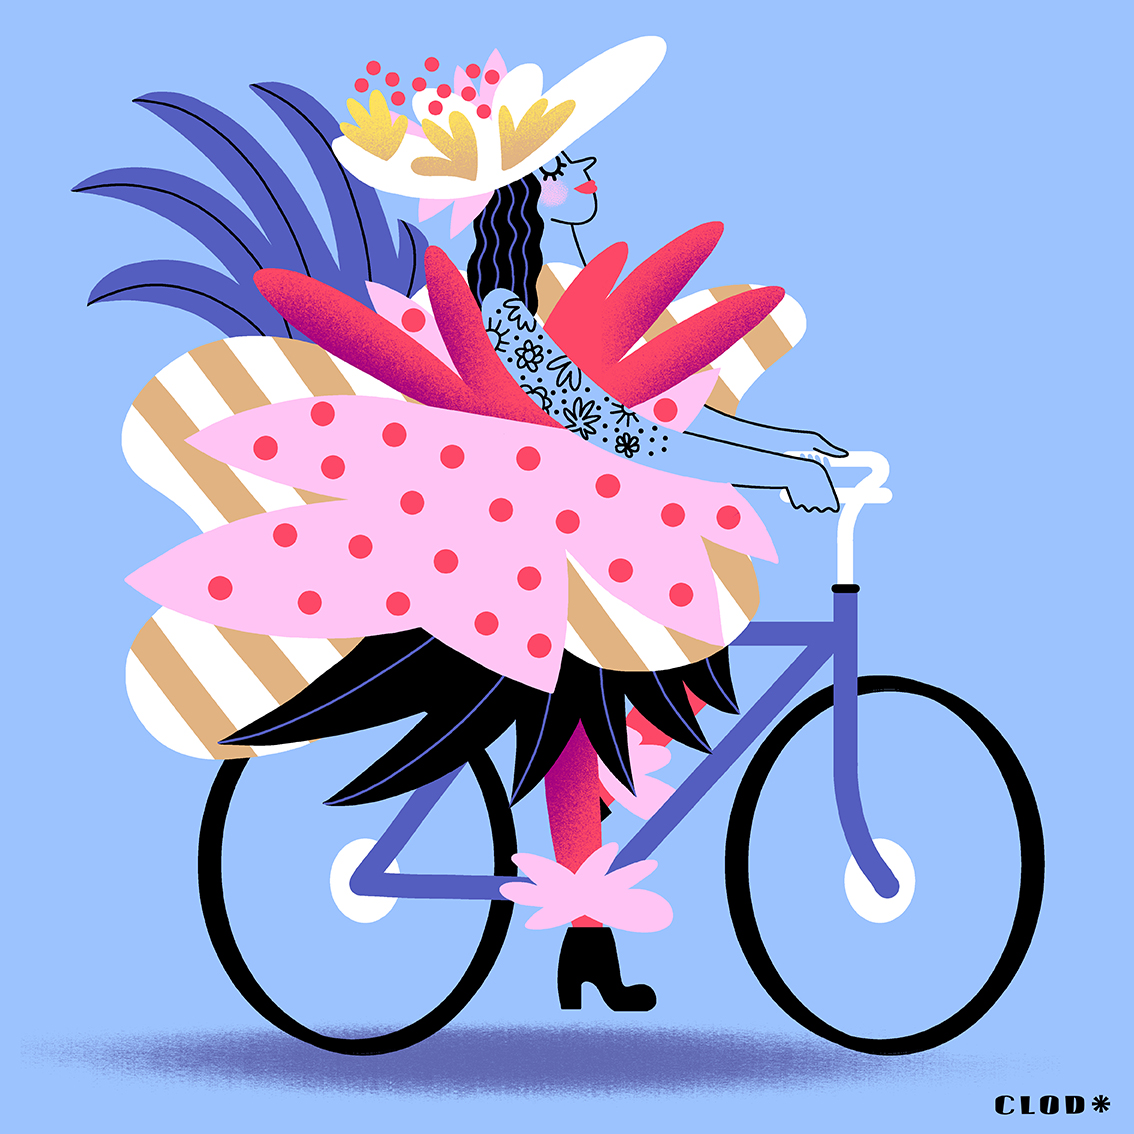 50 BONNES raisons de faire du vélo, par Clod illustrateur